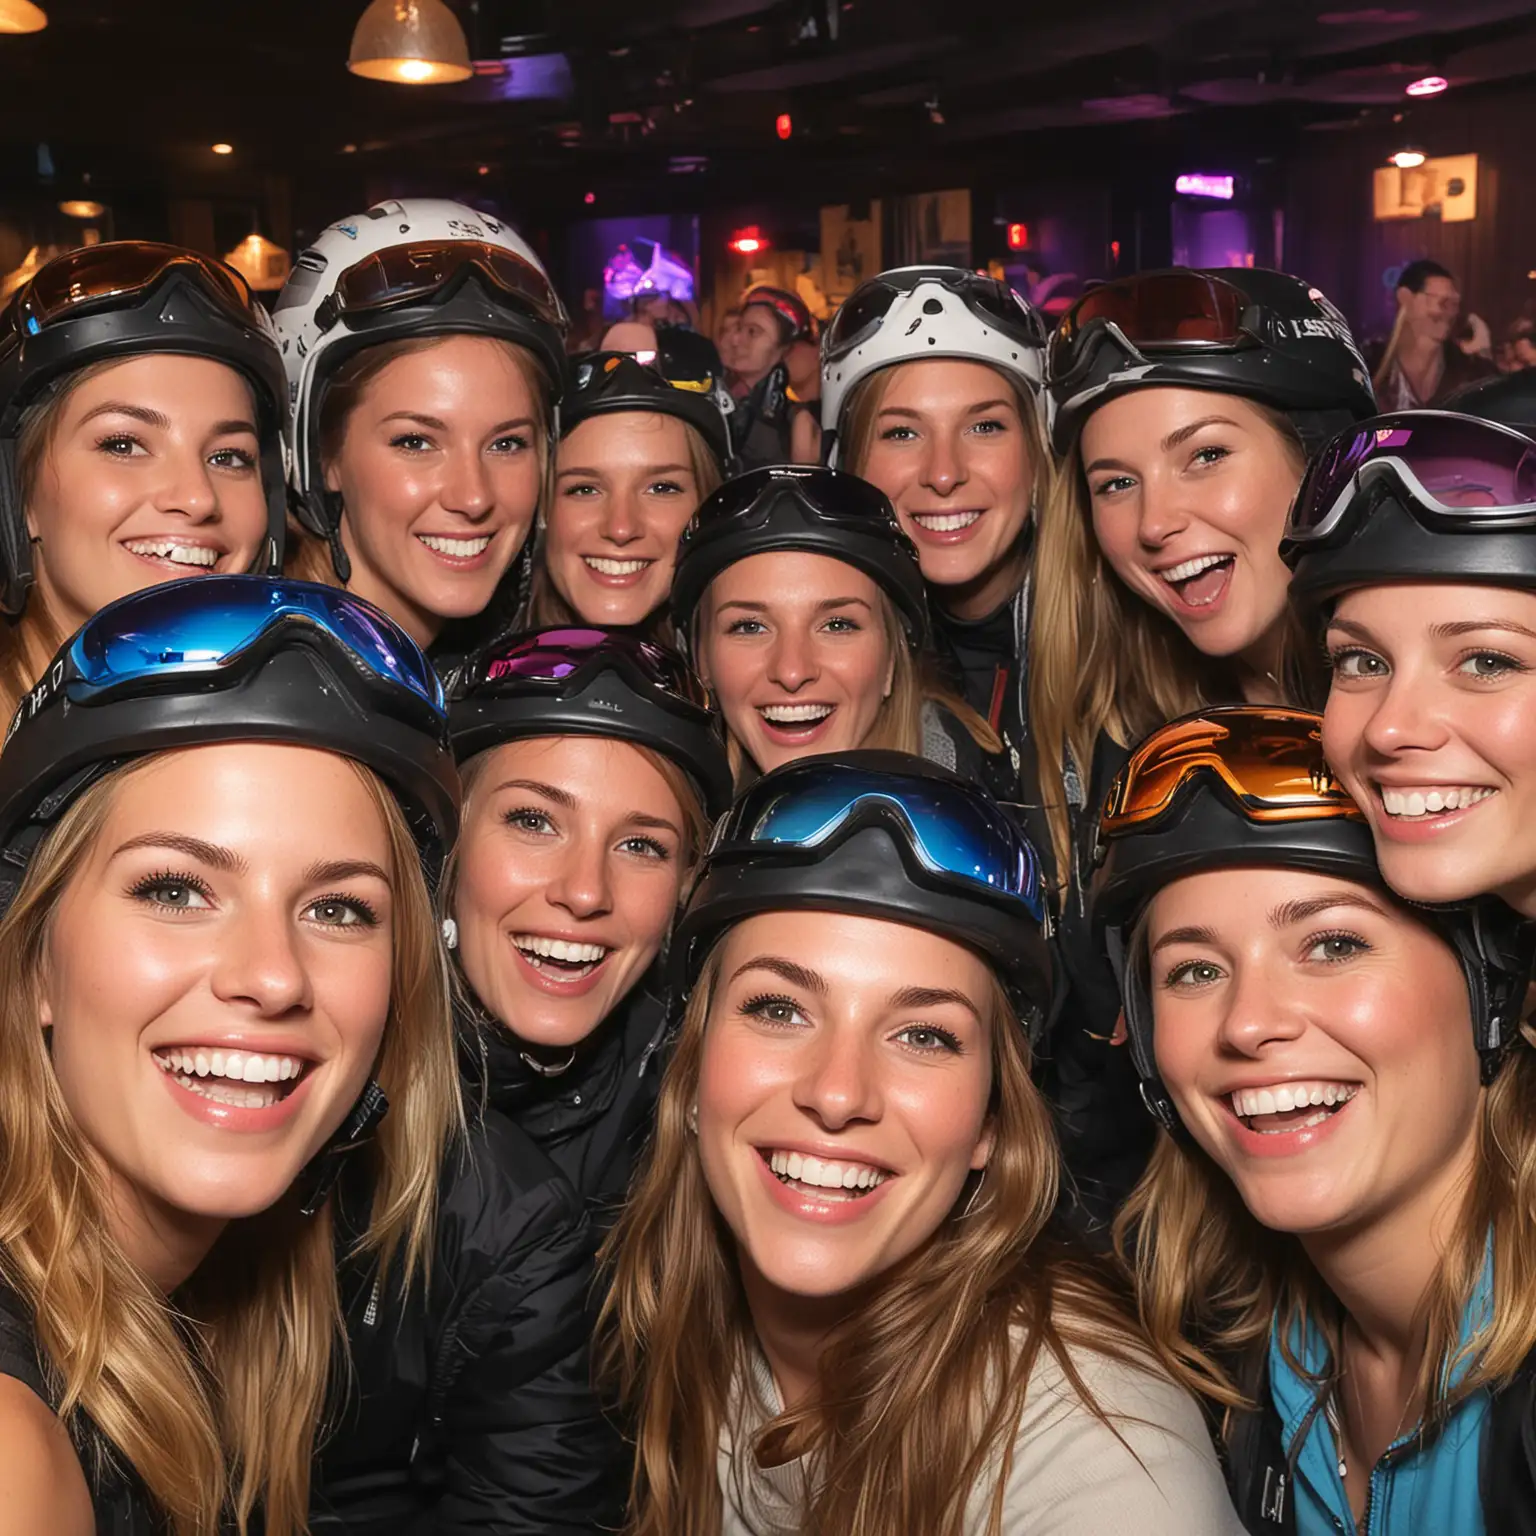 Joyful Females in Ski Helmets Celebrating at a SilverThemed PostSki Party